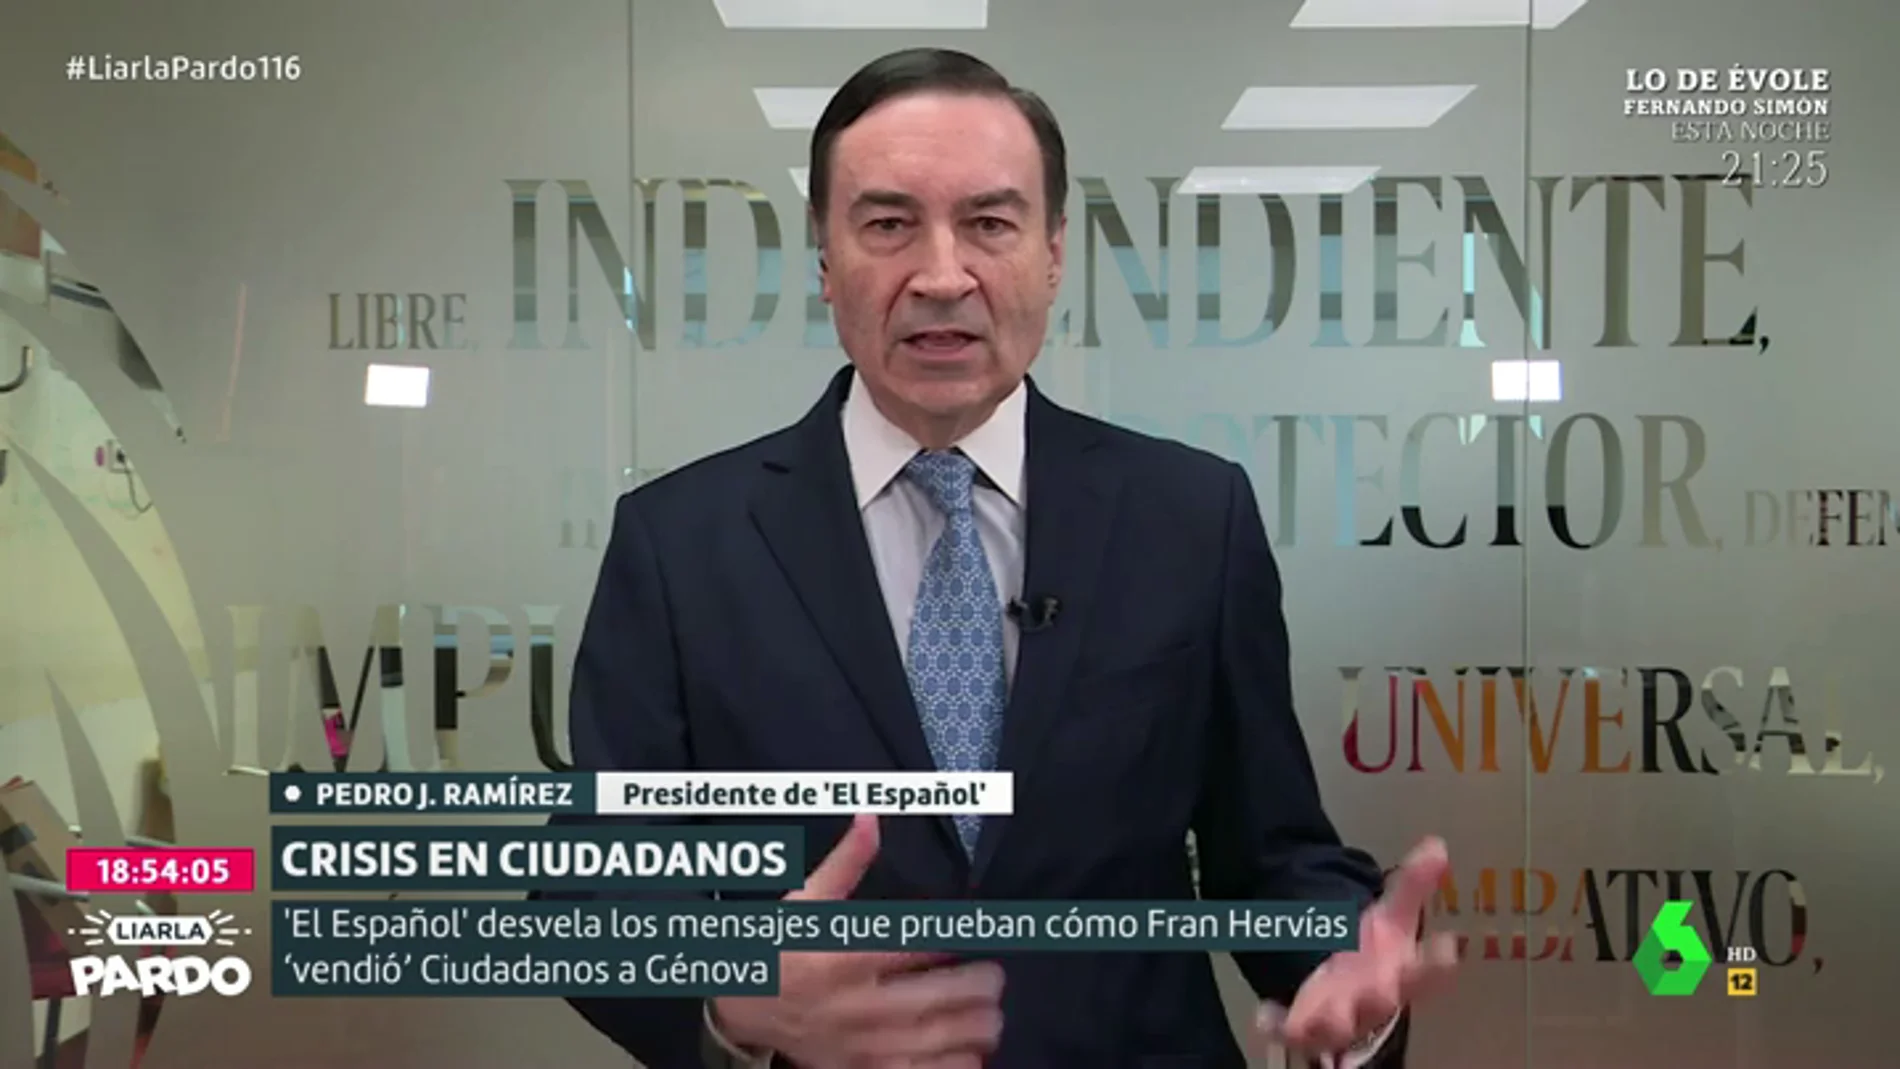 Pedro J. Ramírez cuestiona la "OPA hostil" del PP a Ciudadanos: "Se está pasando de frenada"